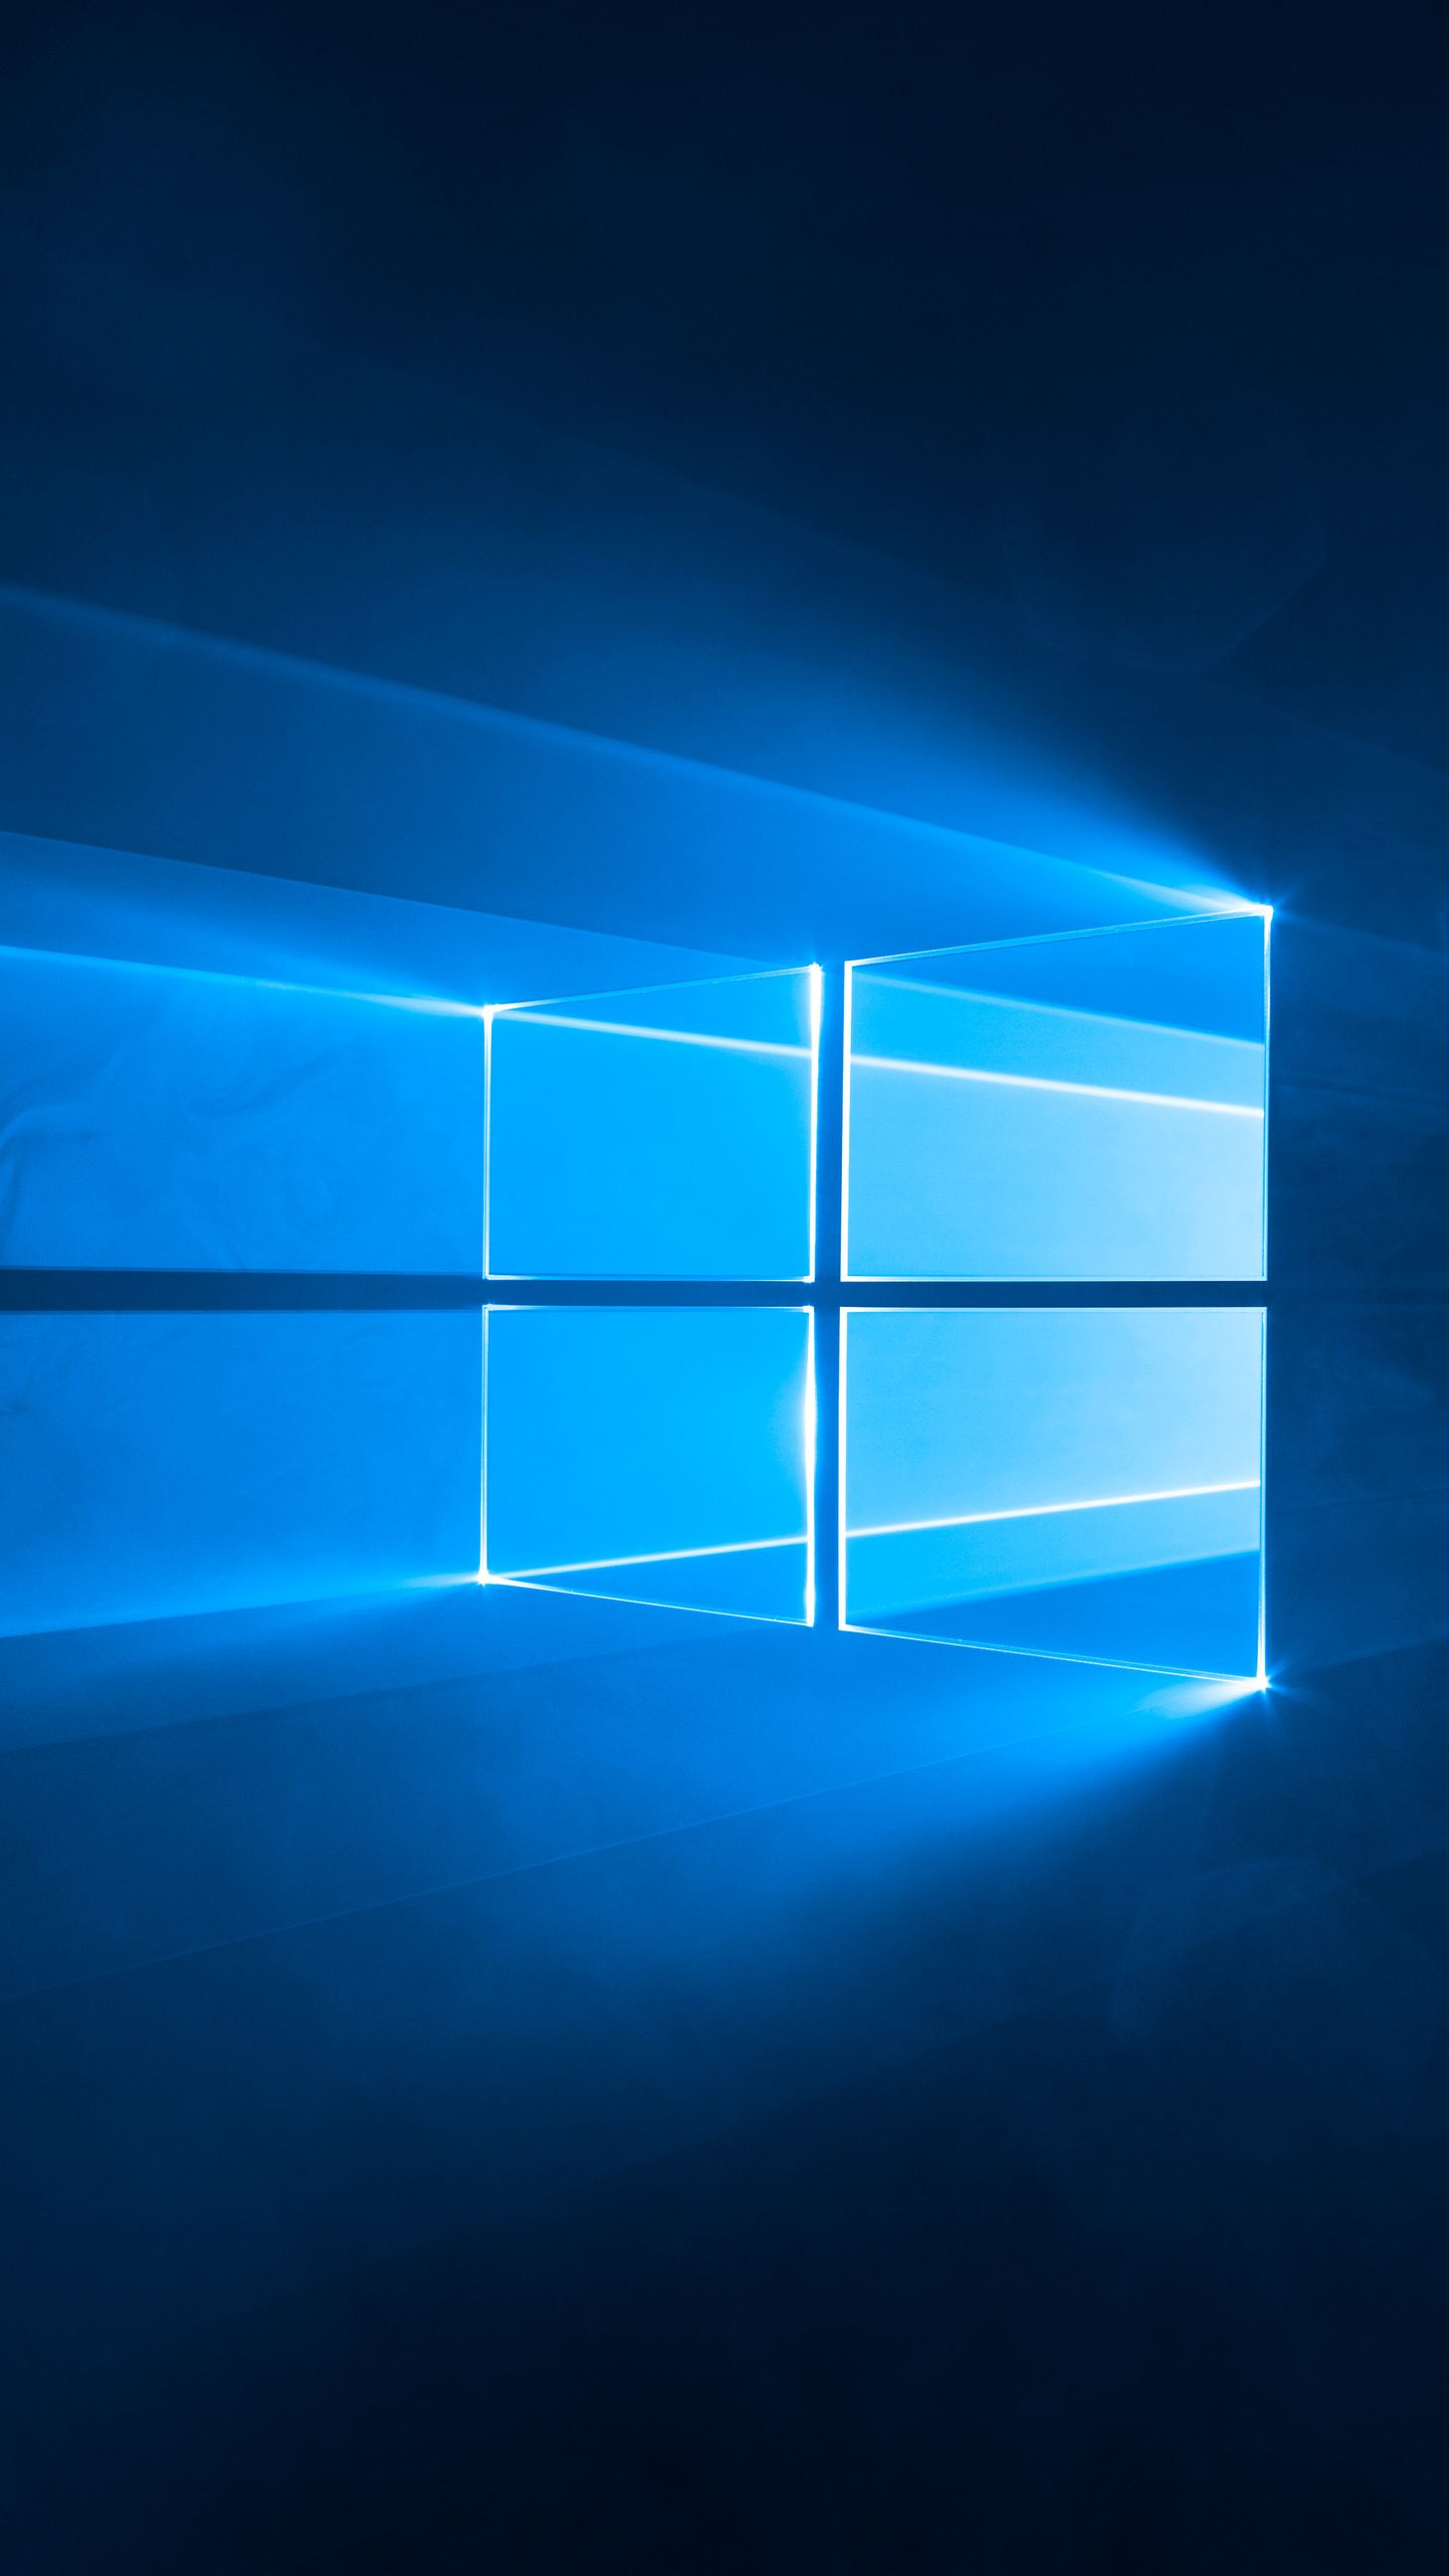 1456x2588  Windows 10 Обои | Обои для Windows Обои для рабочего стола Microsoft Обои для Windows 10